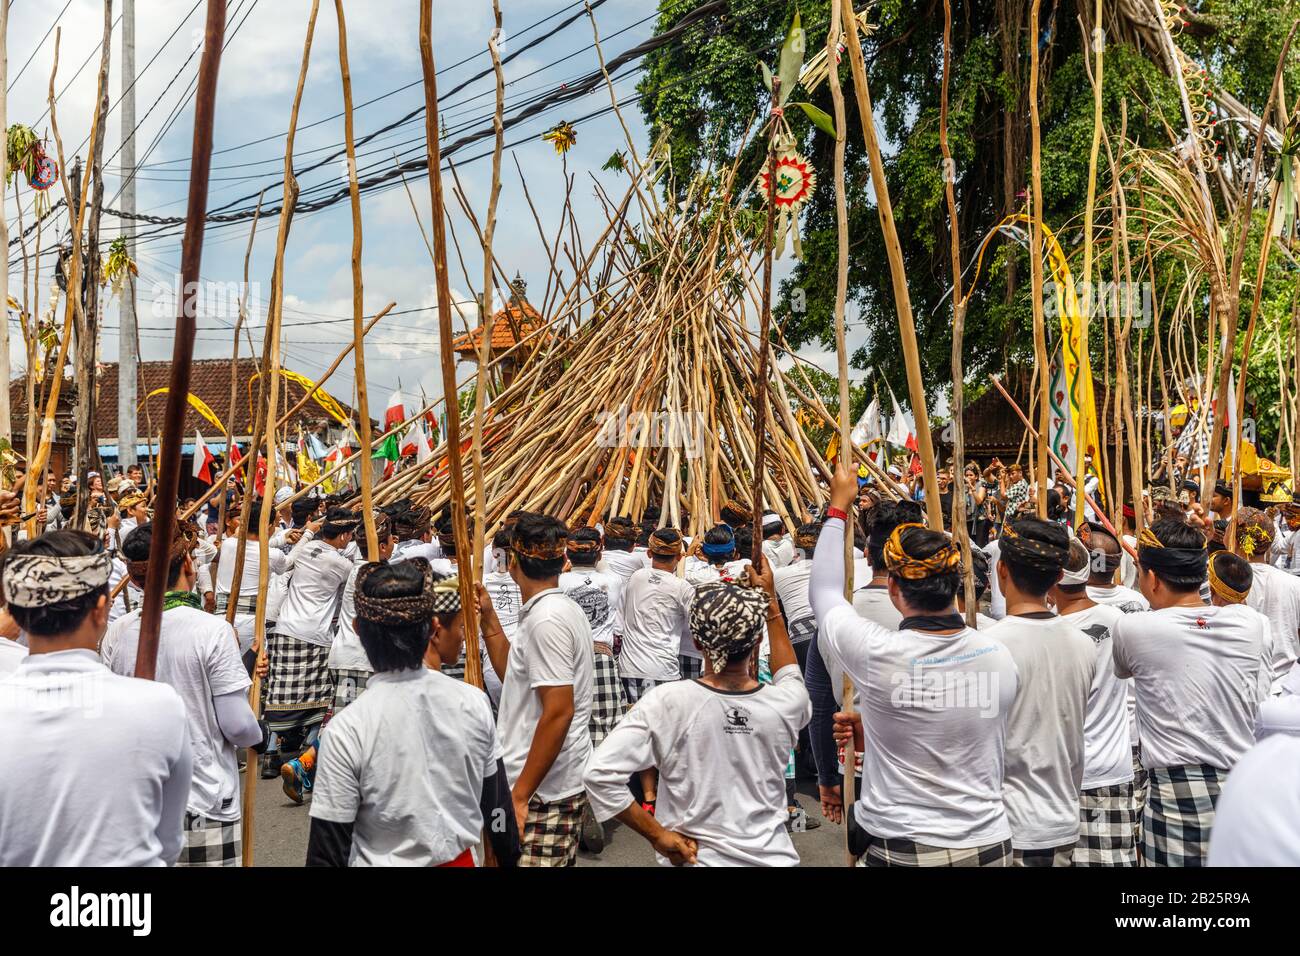 Balinesisches Hindu während der Mekotek-Zeremonie bei Kuningan-Feier. Munggu Dorf, Bali, Indonesien. Februar 2020. Stockfoto